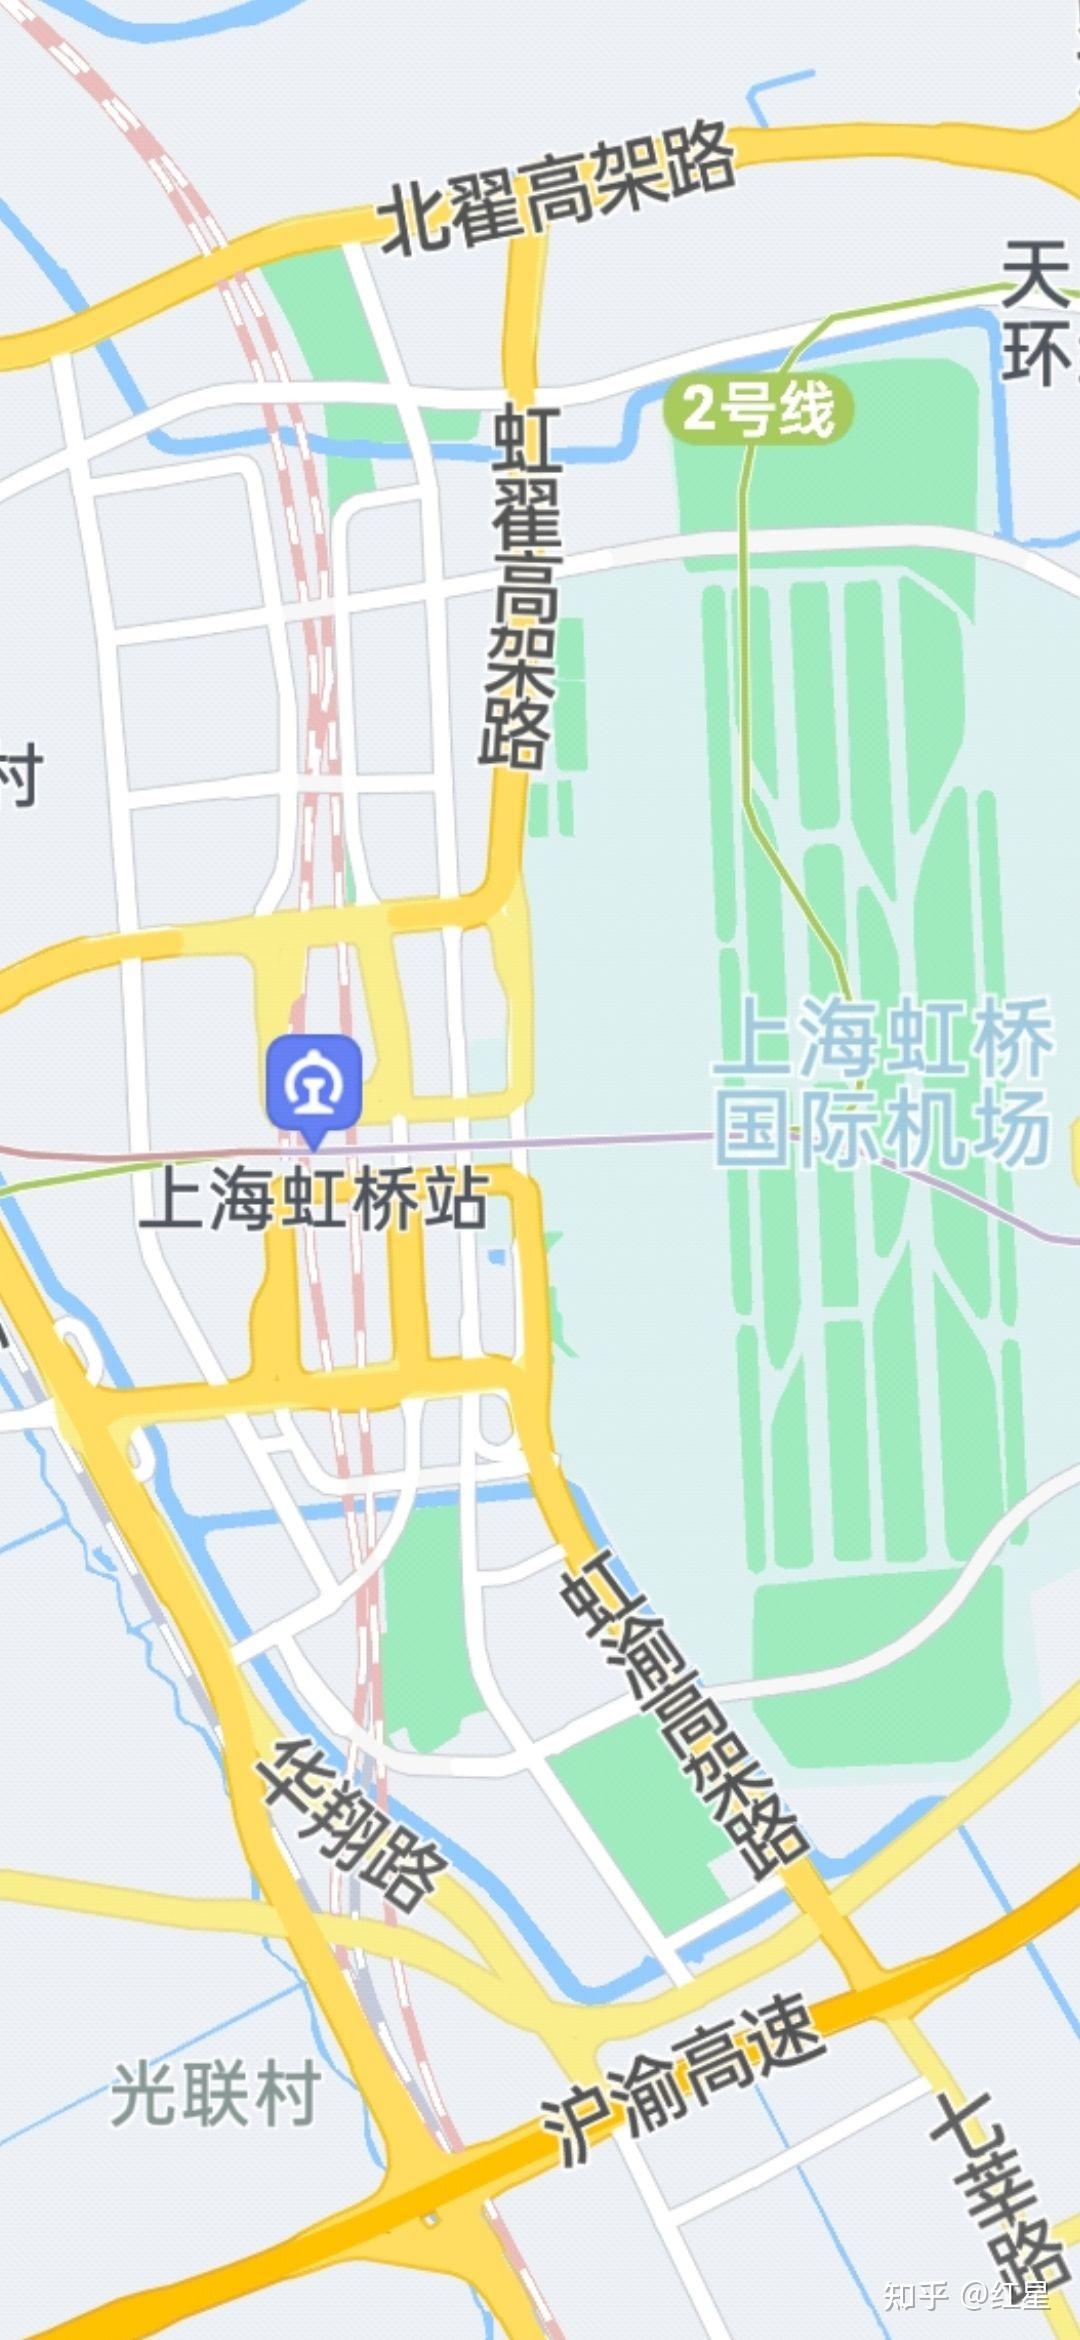 上海浦东国际机场到火车站去要怎么走? 